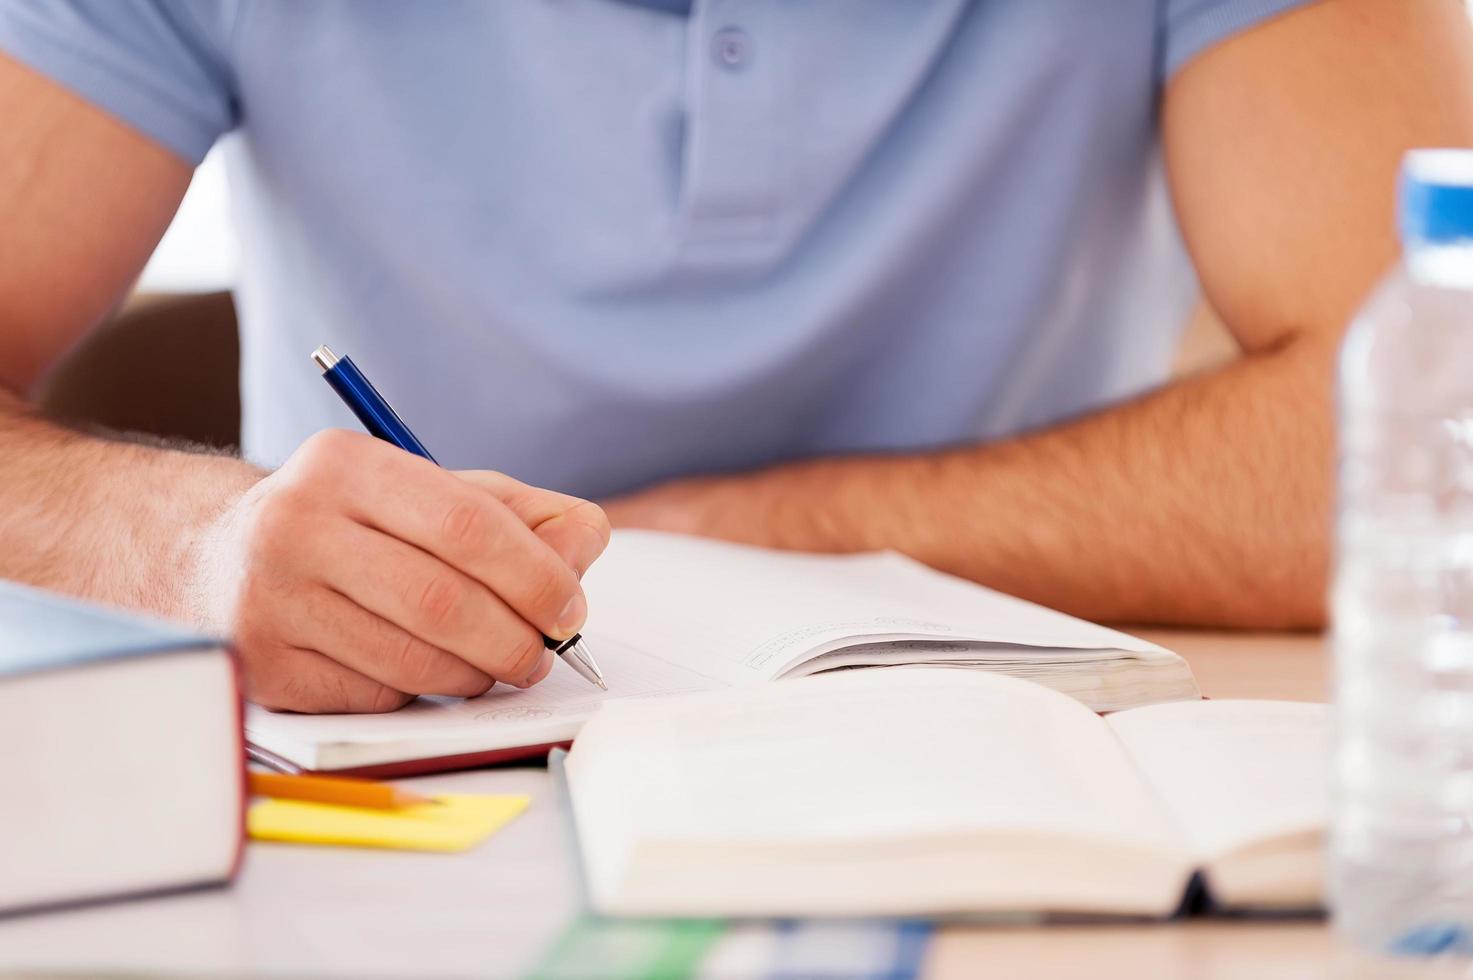 fleißig studieren. Zugeschnittenes Bild eines Schülers, der etwas in einen Notizblock schreibt, während er am Schreibtisch sitzt foto